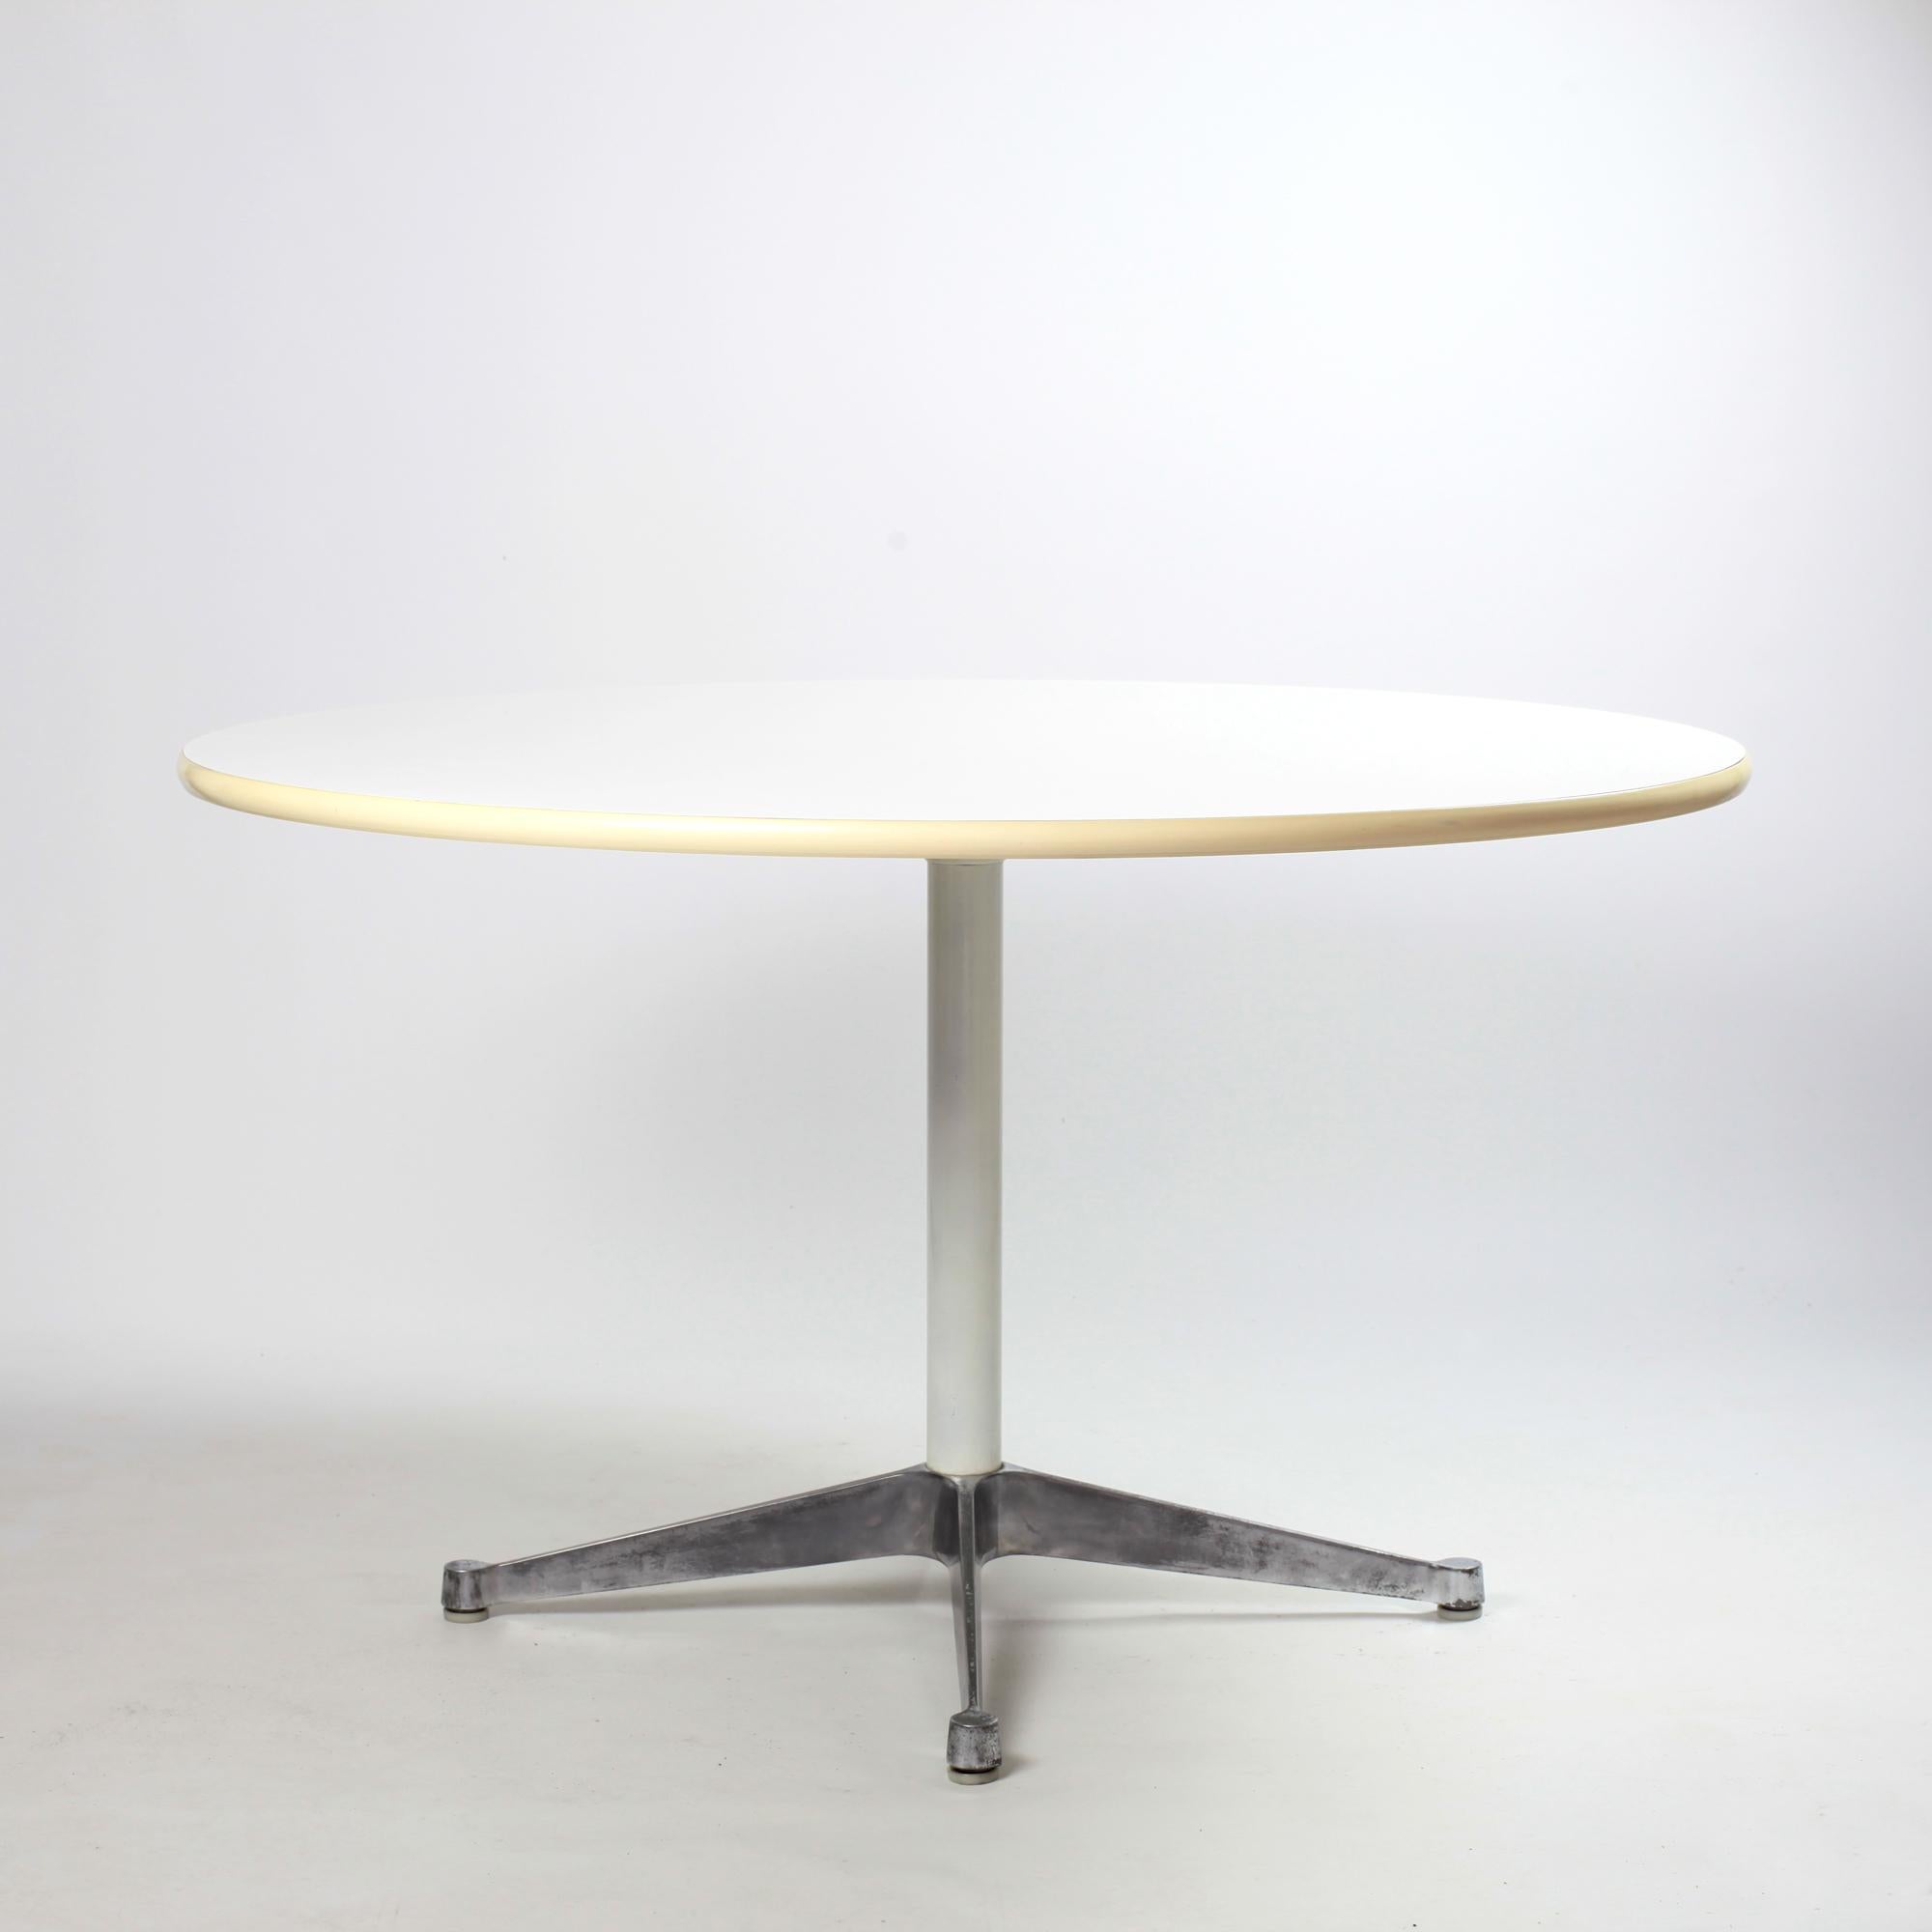 Schöner früher Esstisch mit Kontraktfuß von Charles und Ray Eames für Herman Miller. 
Der Tisch hat ein Aluminiumgestell und eine weiße Formica-Tischplatte mit Gummikante. 
In sehr gutem Vintage-Zustand.